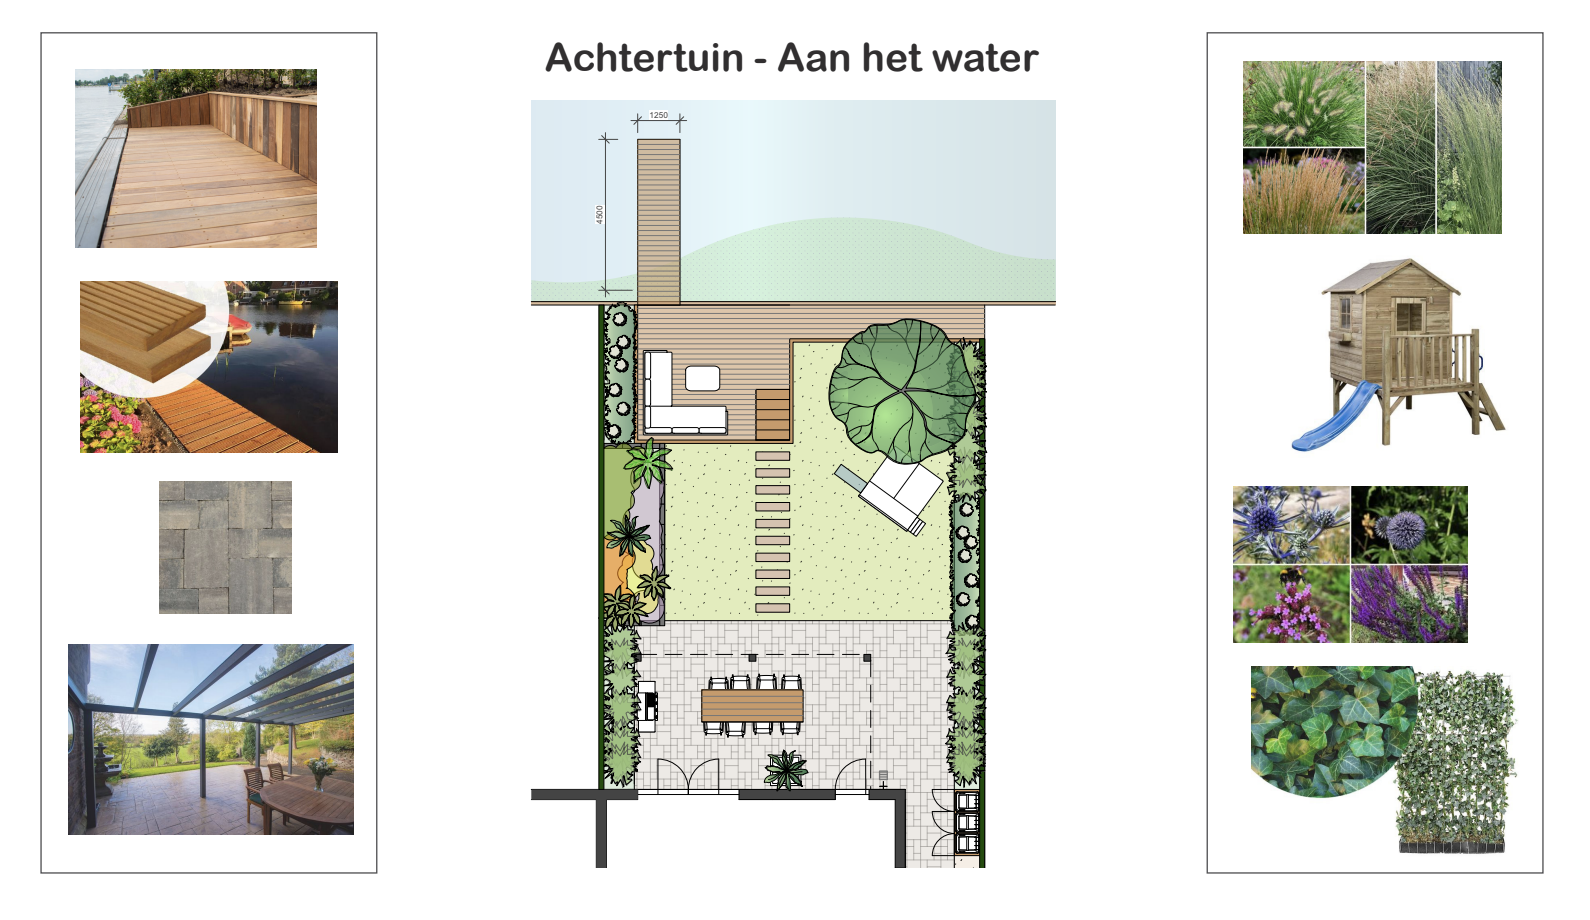 gratis tuinontwerp achtertuin aan het water - voorbeeld ontwerp